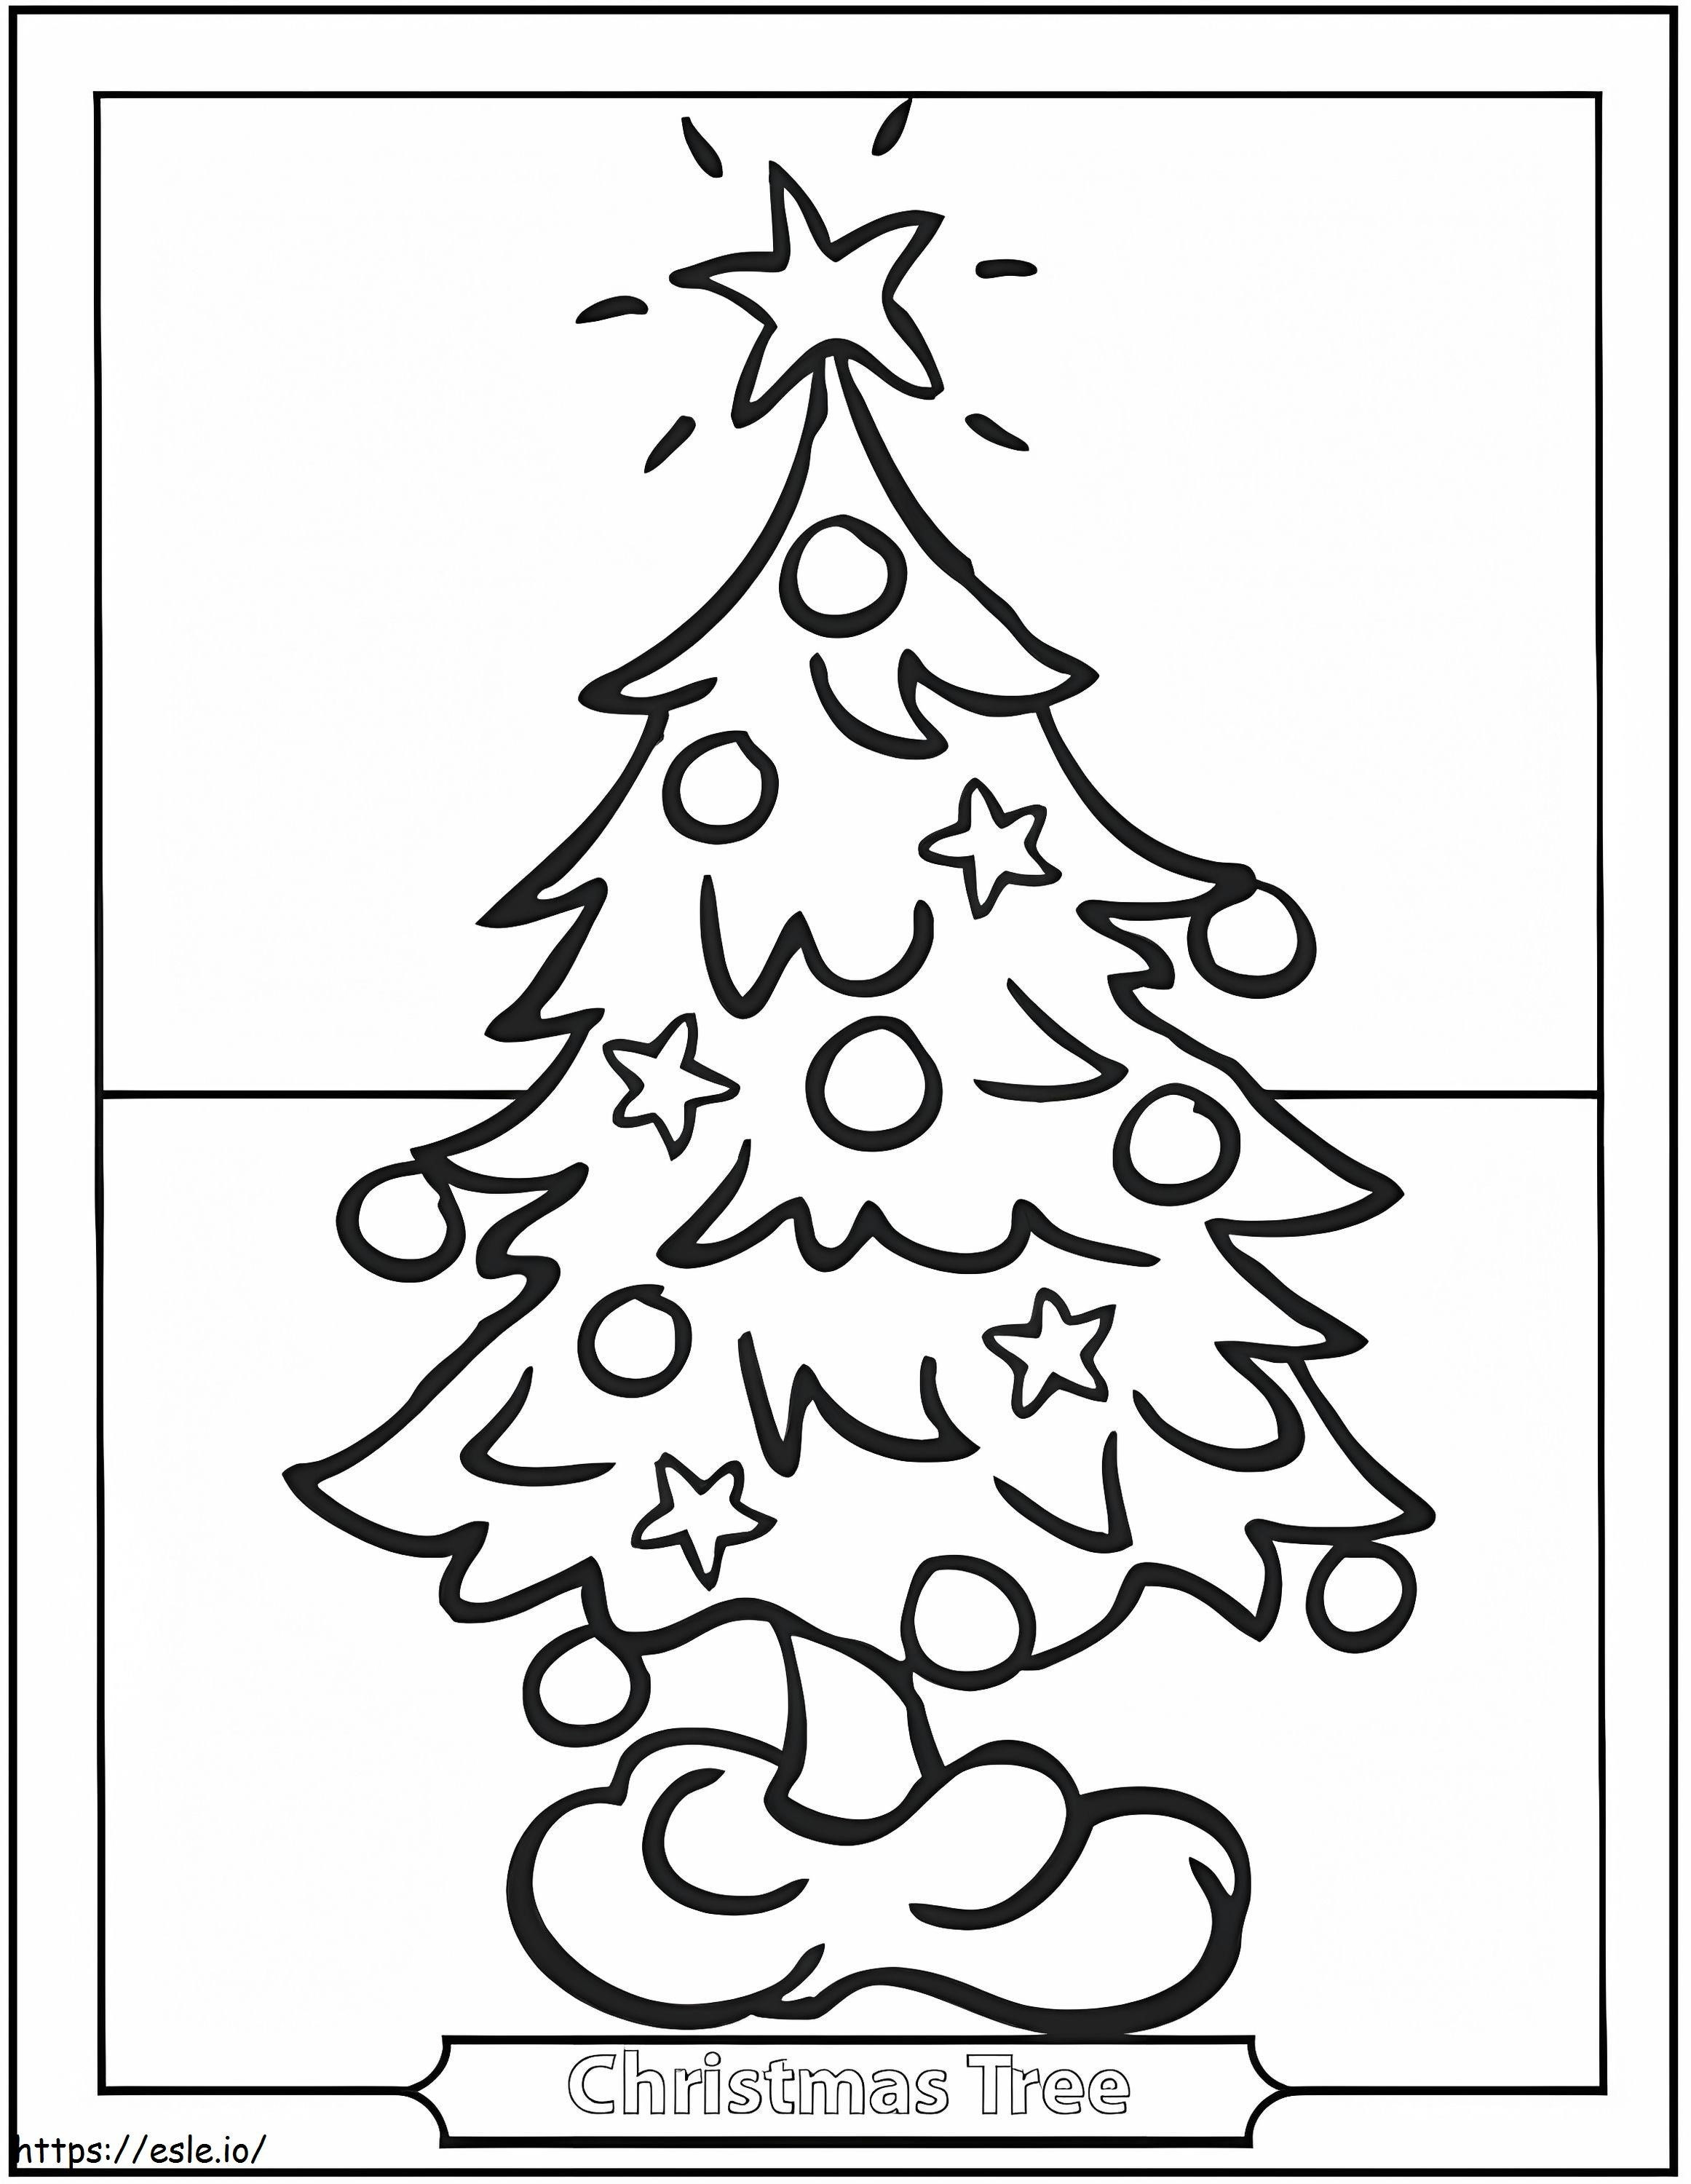 Desenho Básico de Árvore de Natal para colorir